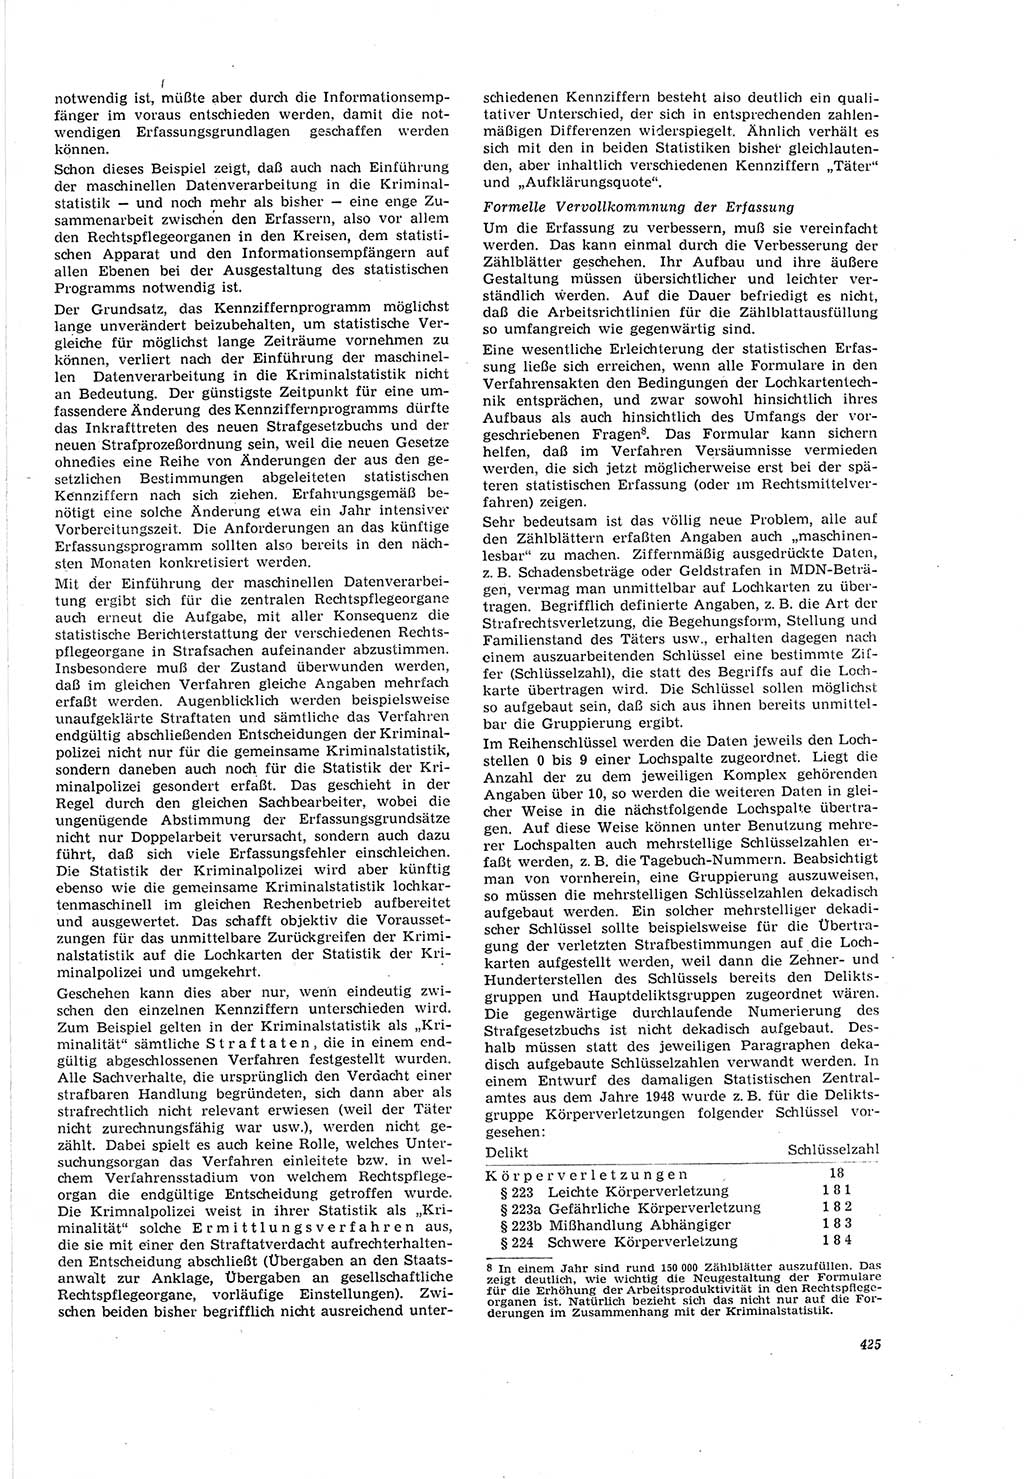 Neue Justiz (NJ), Zeitschrift für Recht und Rechtswissenschaft [Deutsche Demokratische Republik (DDR)], 20. Jahrgang 1966, Seite 425 (NJ DDR 1966, S. 425)